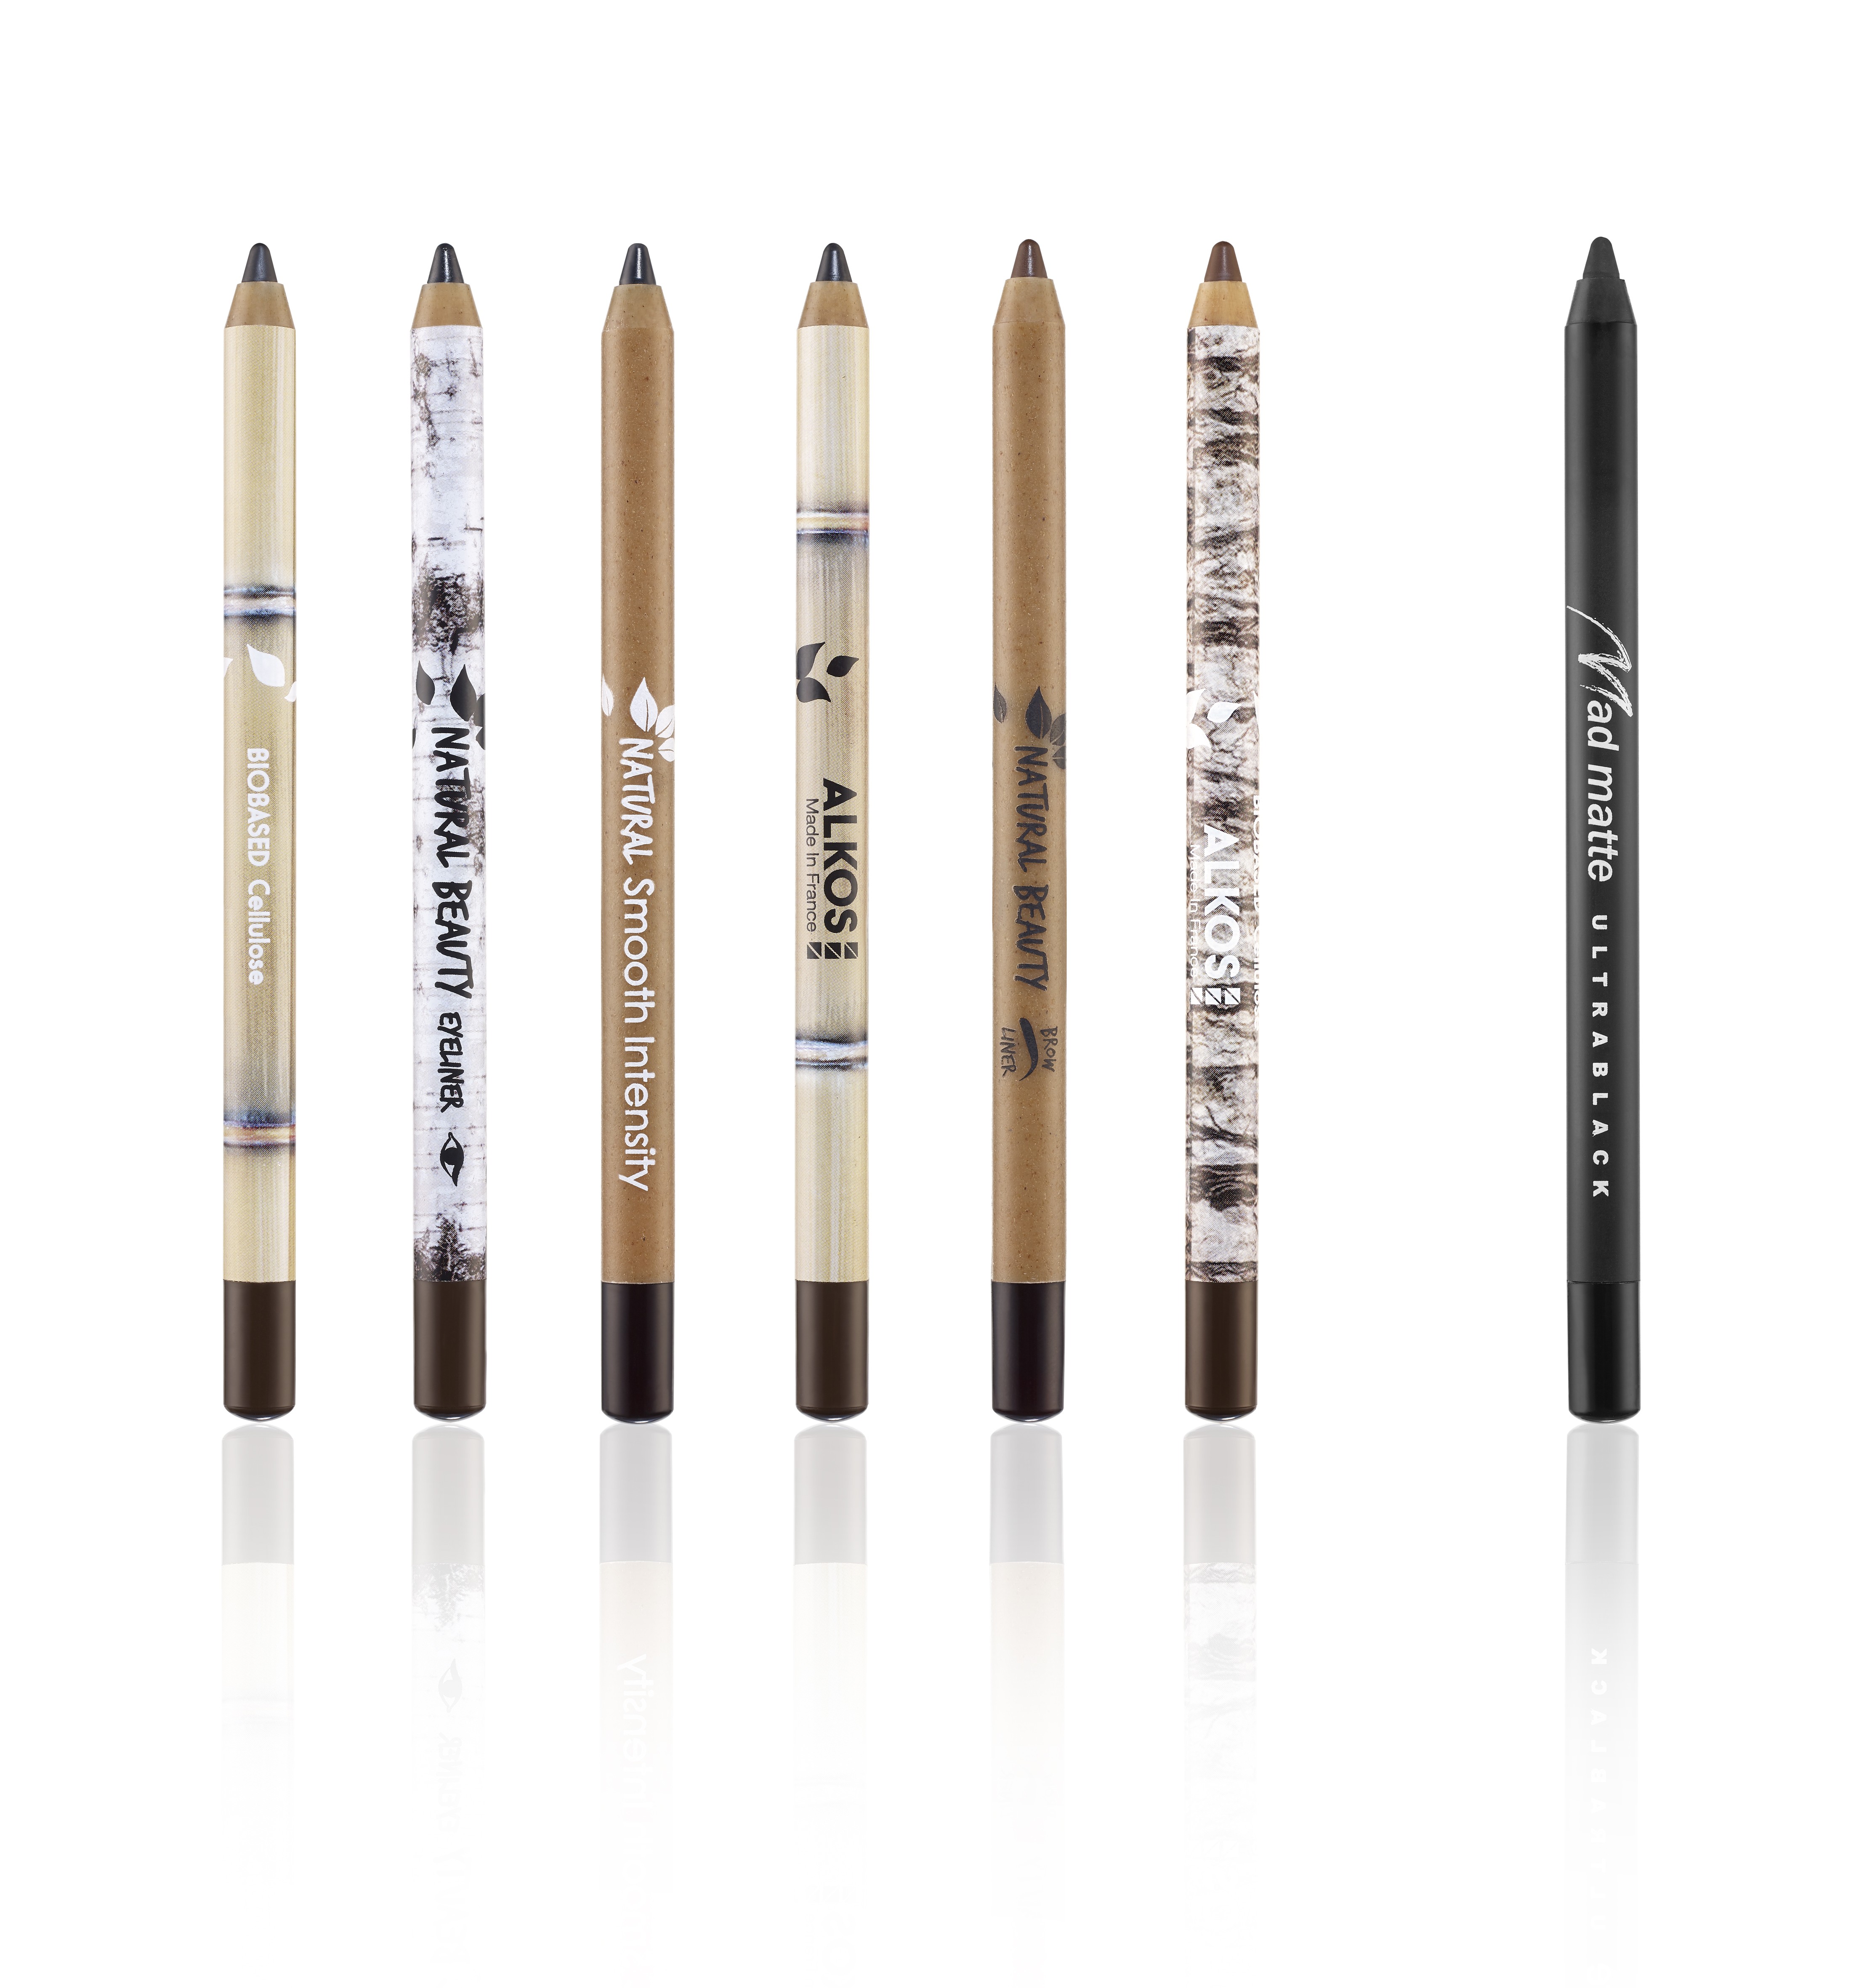 La nouvelle gamme de crayons à maquiller biosourcés que vient de sortir Alkos